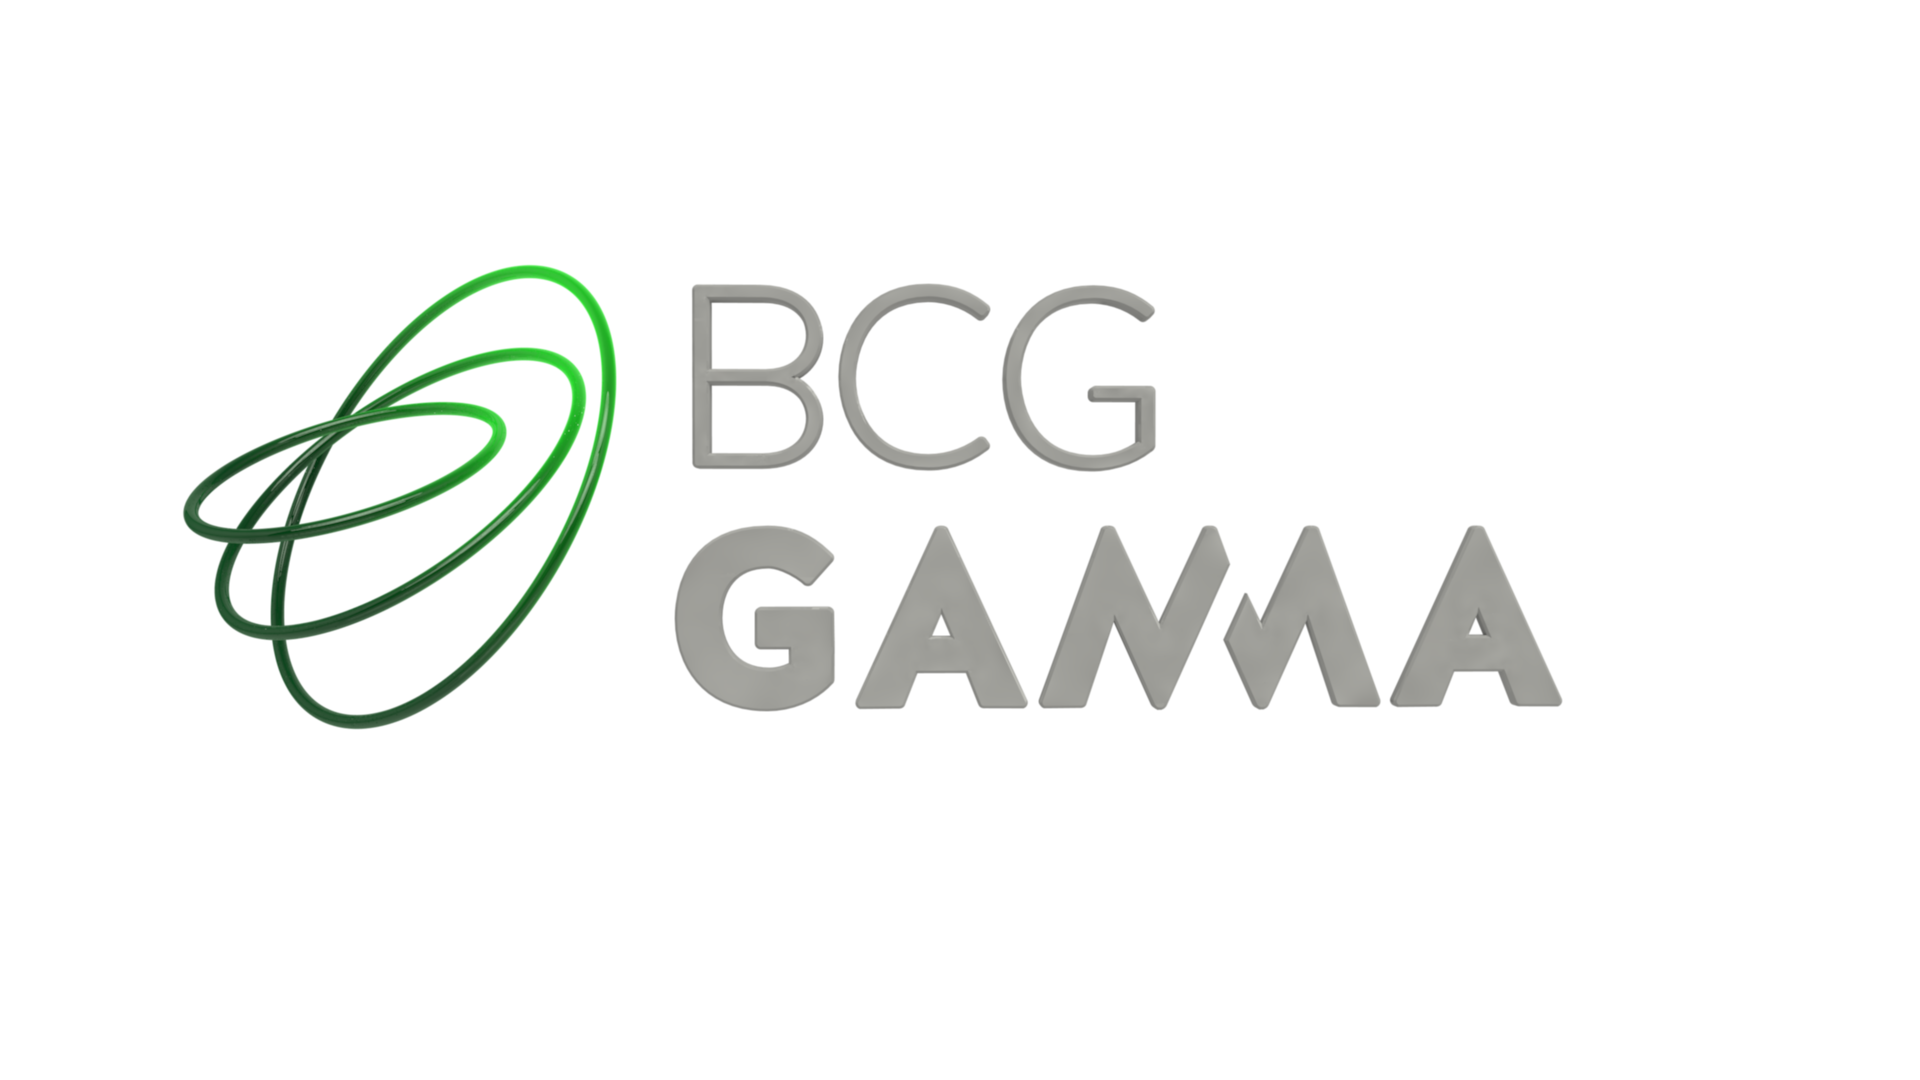 BCG Gamma